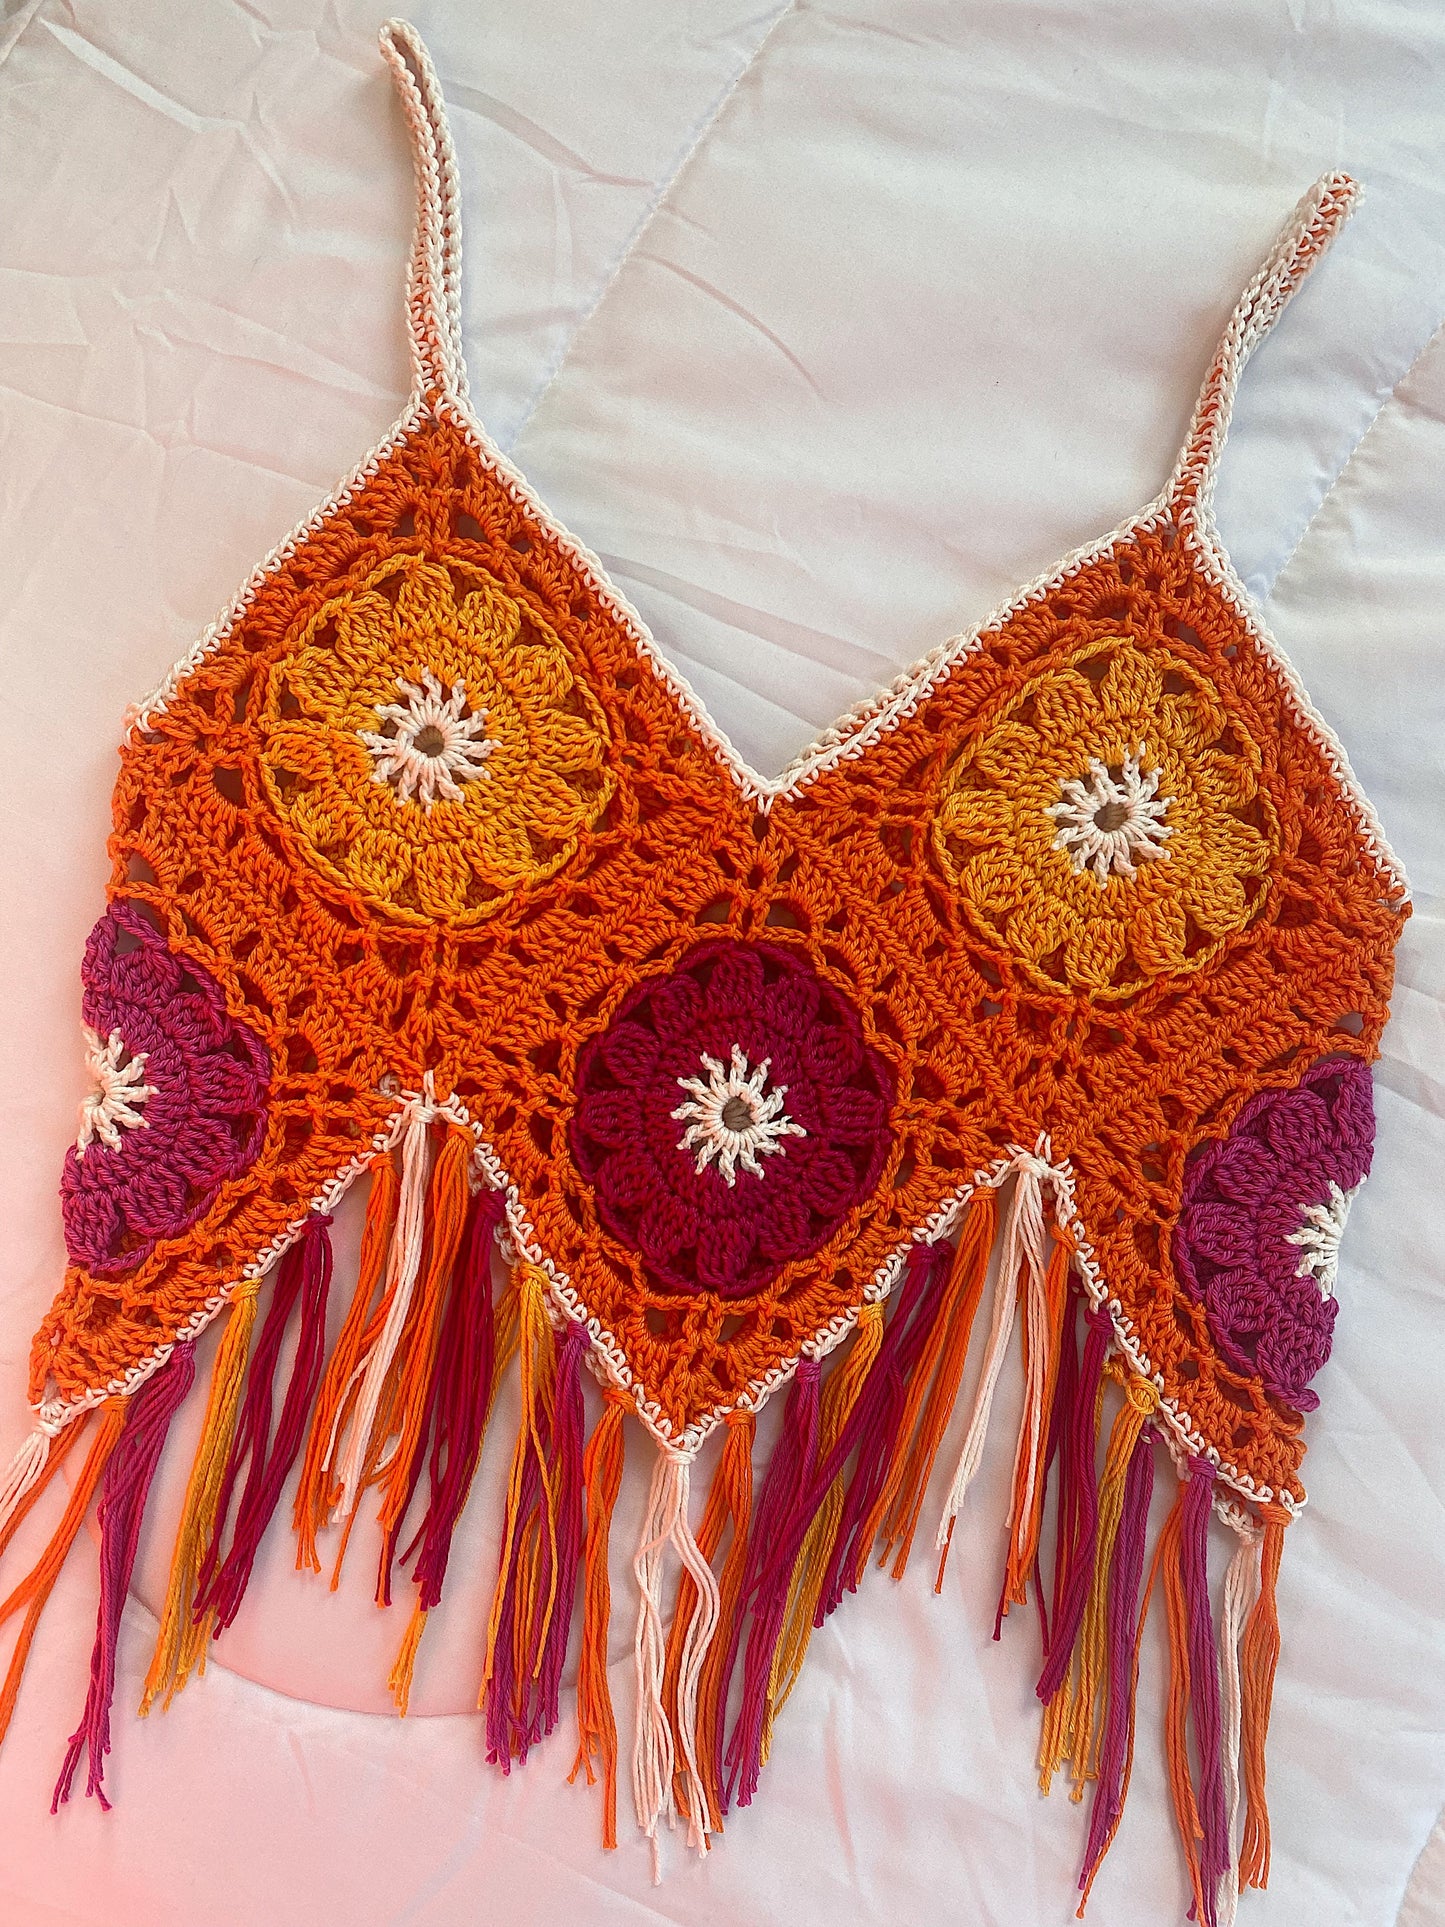 CROCHET PATTERN - Boho Crop Top Crochet Pattern